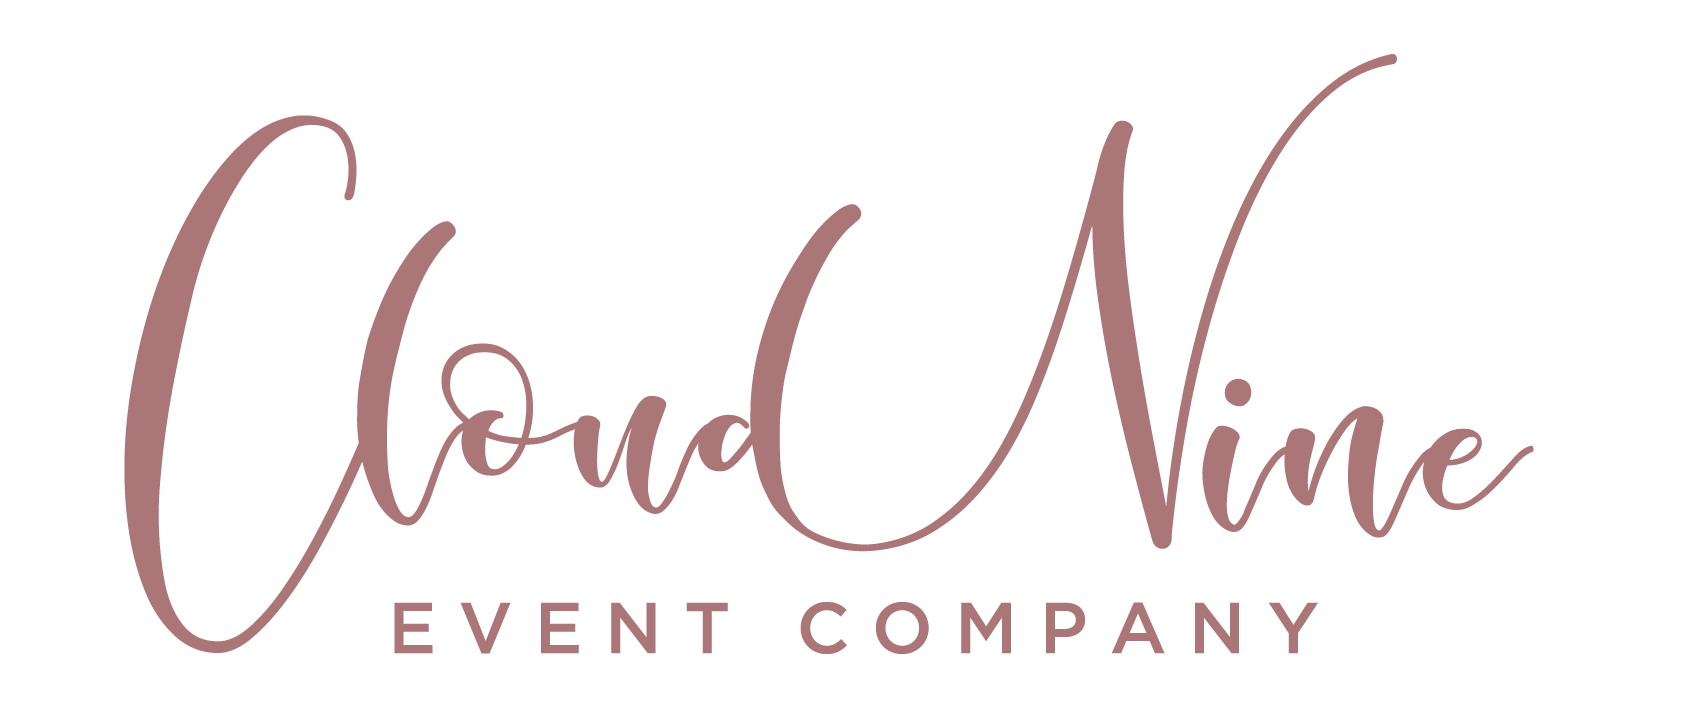 Cloud Nine Event Company